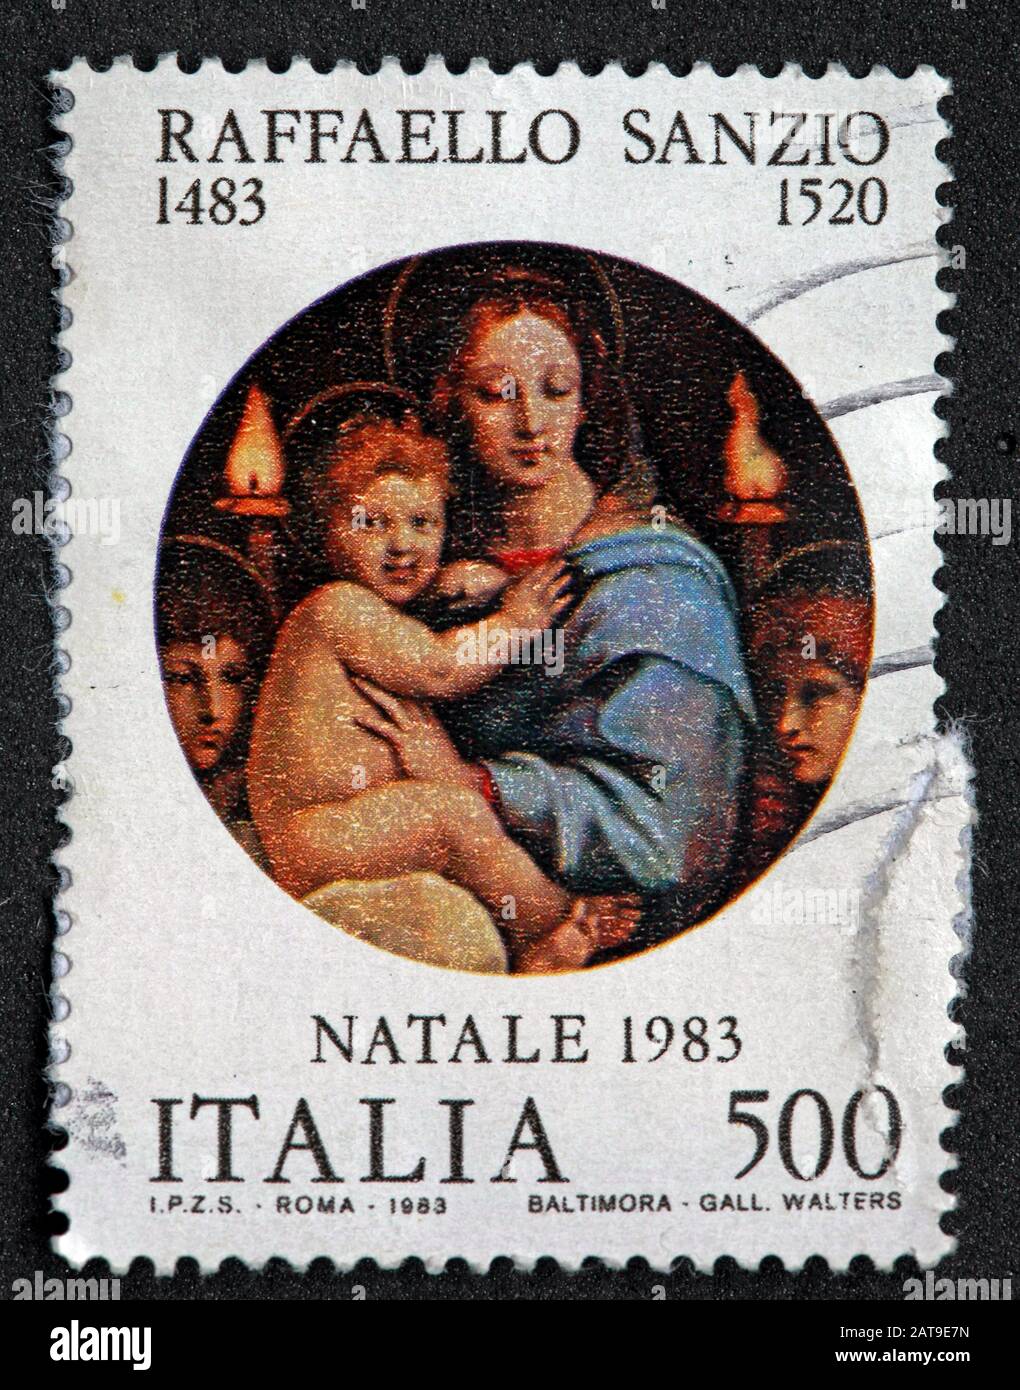 Francobollo italiano, poste Italia usato e affrancato, Italia 500lire  Raffaello Sanzio 1483-1520 Natale 1983 - Roma - Baltimora Foto stock - Alamy